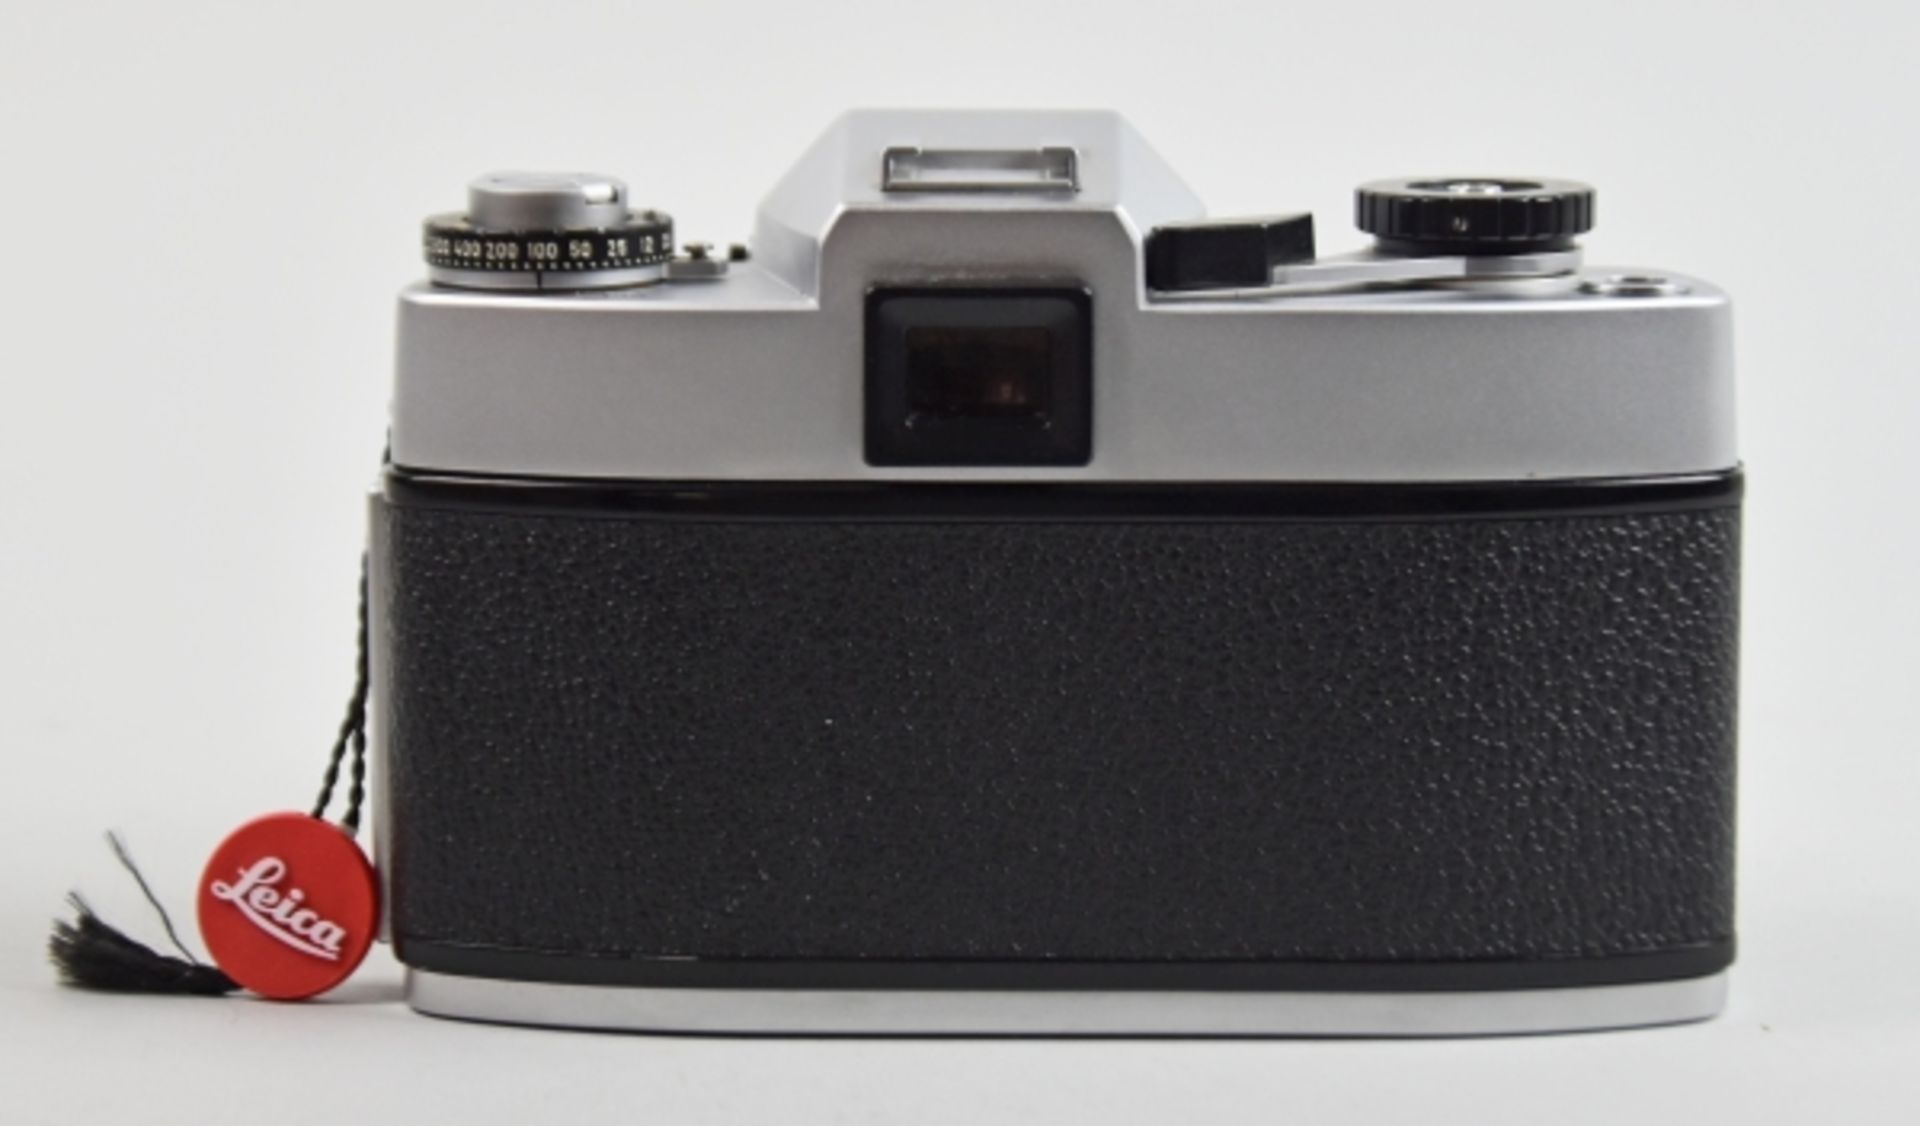 LEICA FOTOAPPARAT Typ Leicaflex SL, Nr.1280590, BJ 1971, Objektiv Summicron- R, 1:2/50, O.Nr. - Bild 3 aus 3